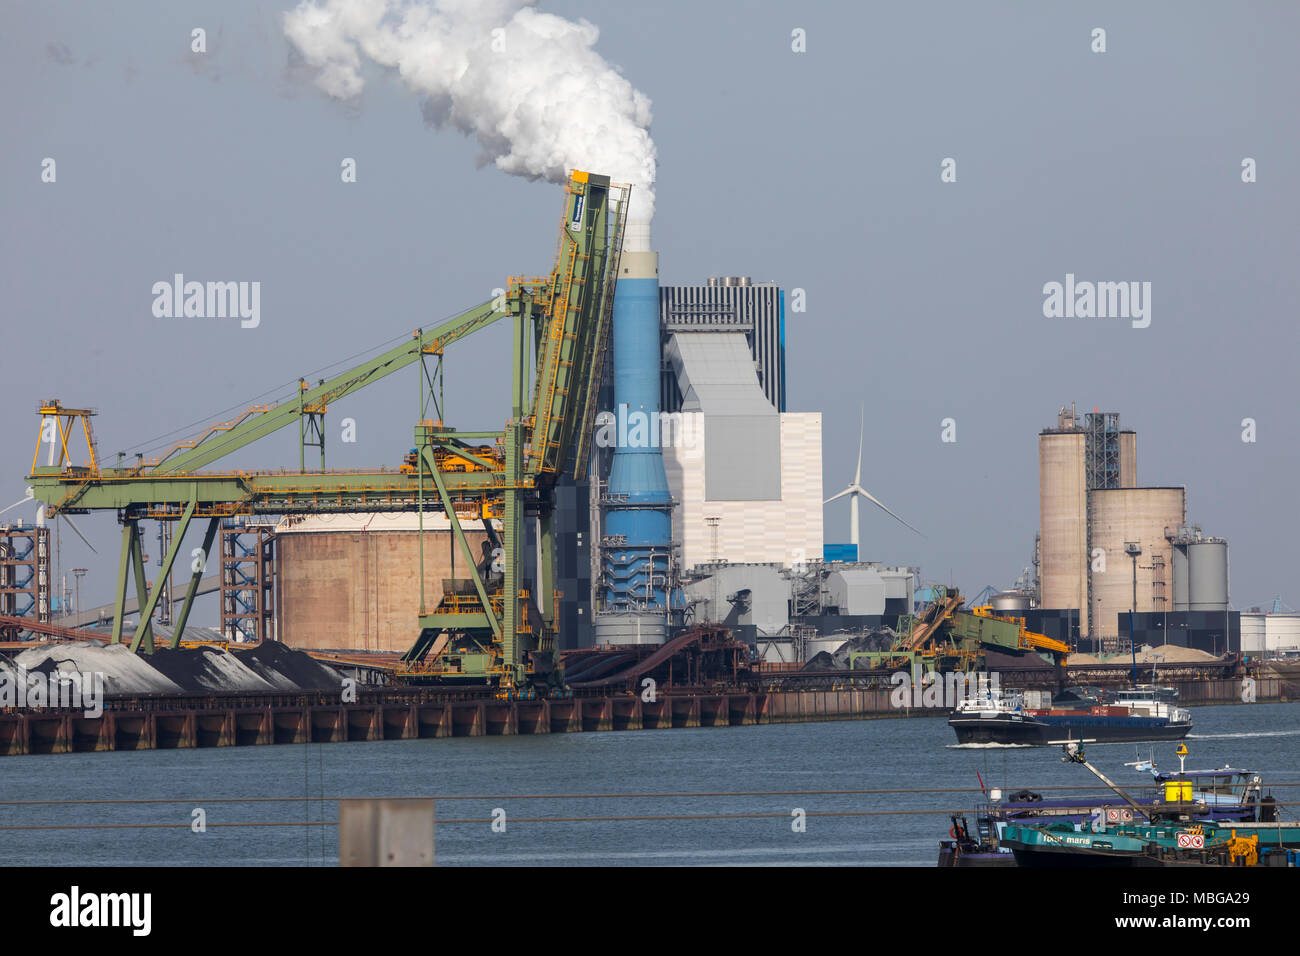 Der Hafen von Rotterdam, Niederlande, Deep-sea port Maasvlakte 2, auf einer künstlich geschaffenen Land Bereich vor der ursprünglichen Küste, Hafen, für Stockfoto